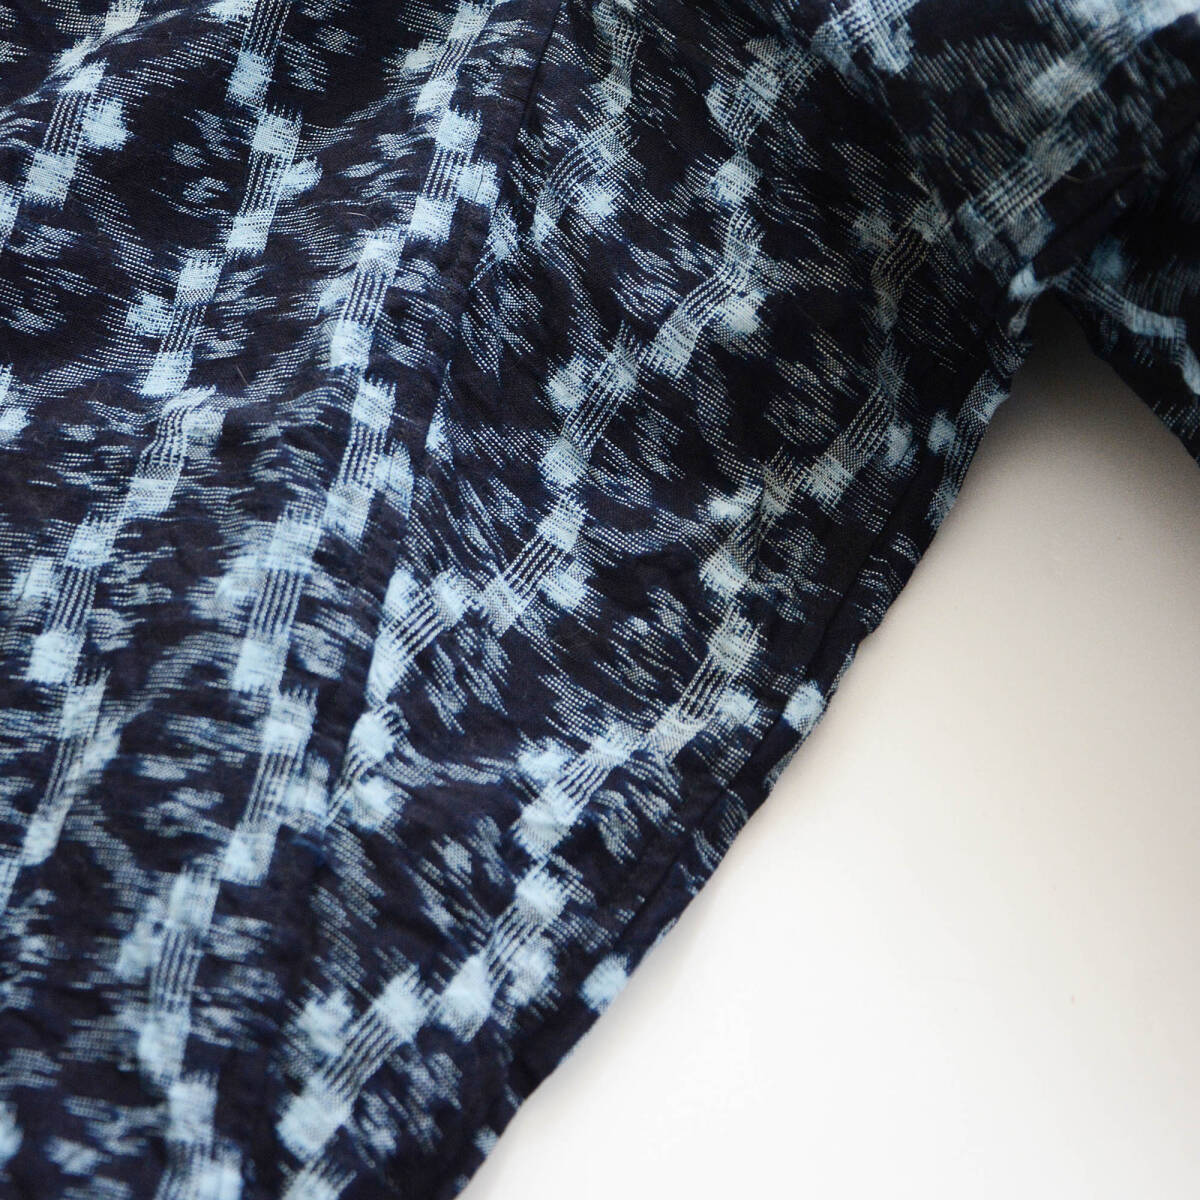 もんぺ 野良着 着物 パンツ 藍染 絣 木綿 ジャパンヴィンテージ 昭和 リメイク素材 monpe noragi pants japanese fabric vintage indigo_画像5